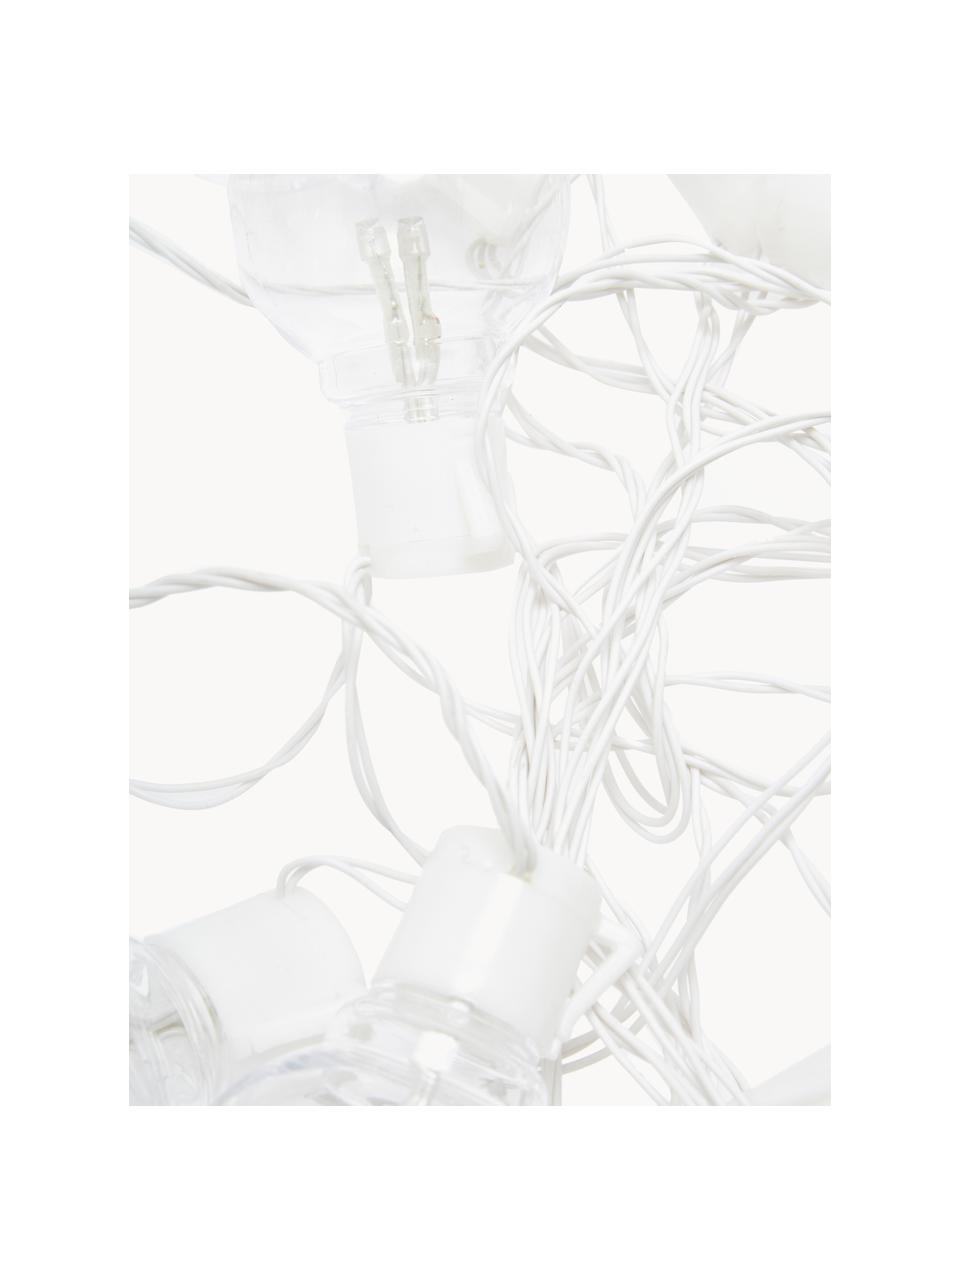 Ghirlanda a LED da esterno Partaj, 950 cm, Bianco trasparente, Lung. 950 cm